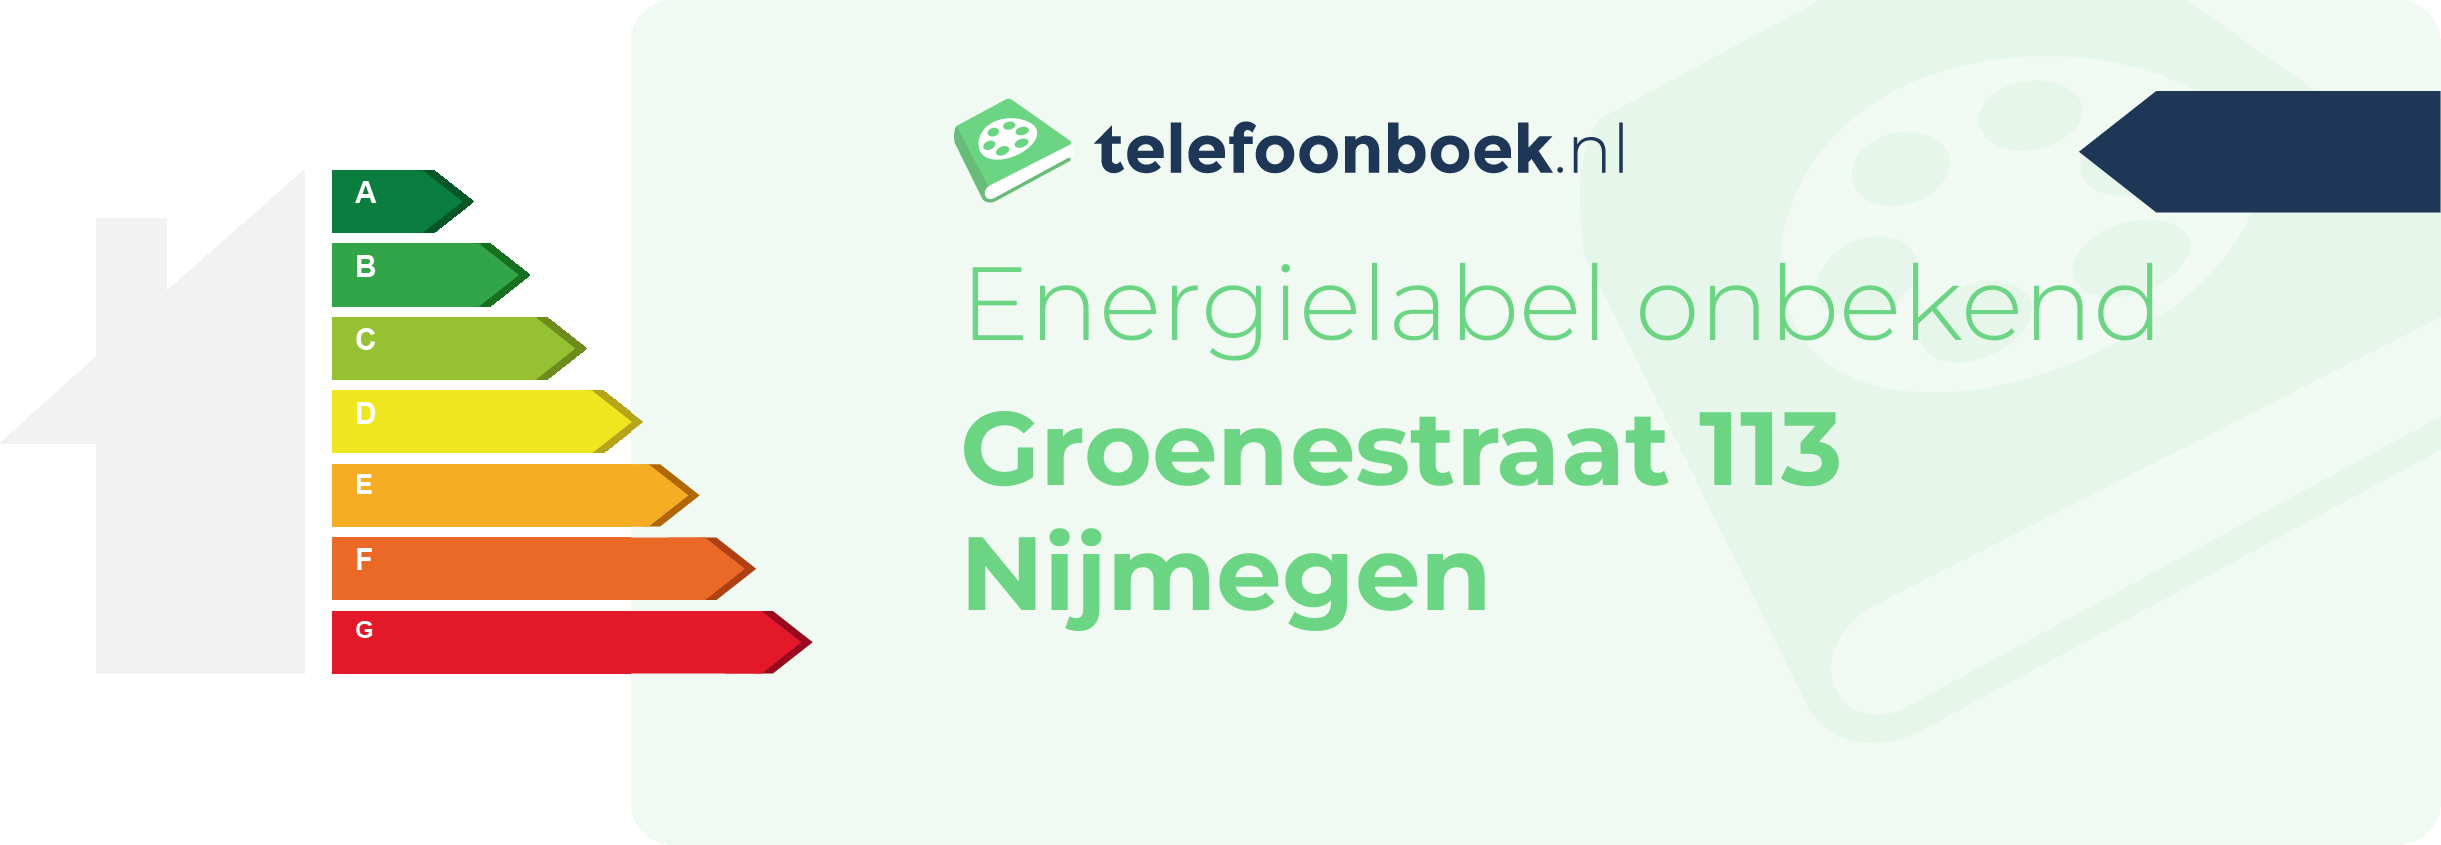 Energielabel Groenestraat 113 Nijmegen